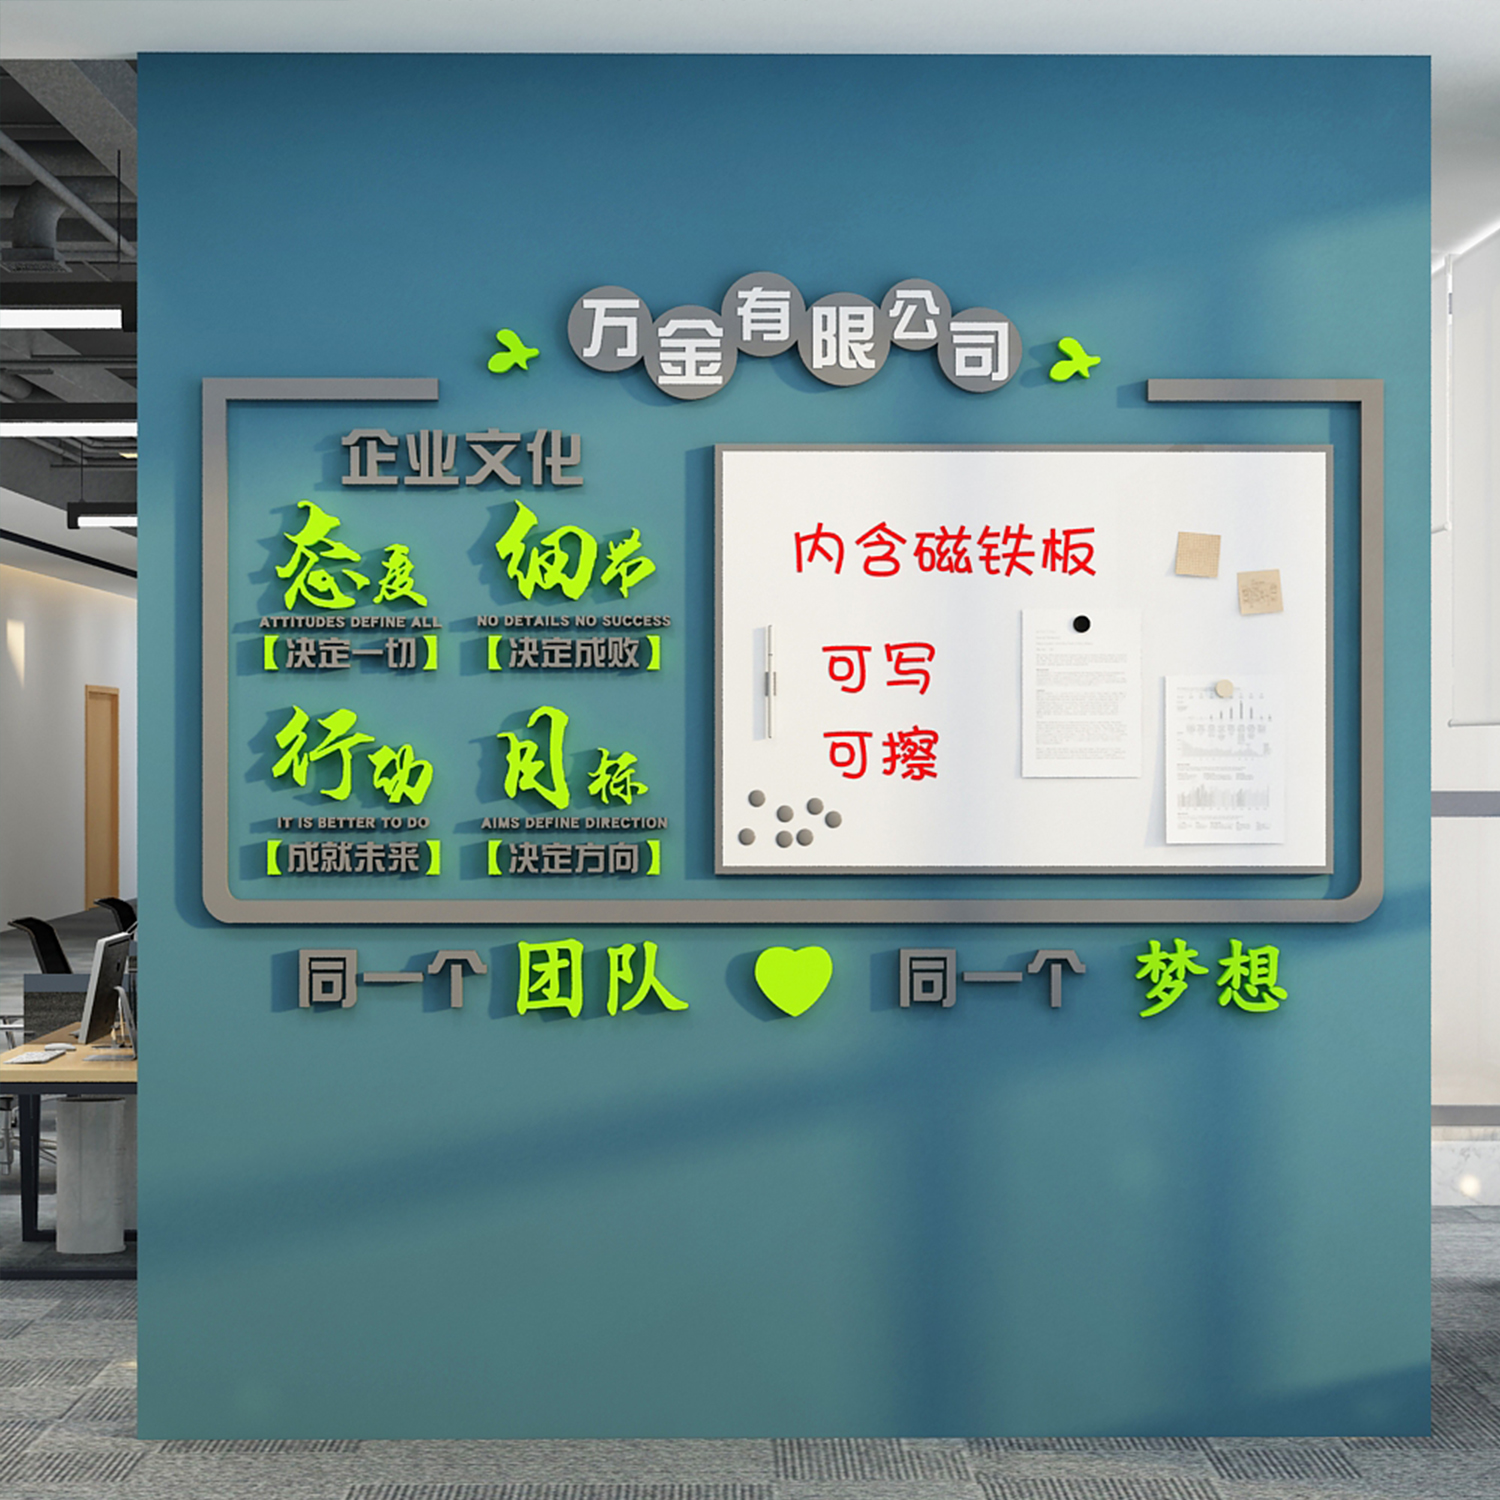 办公室墙面装饰告宣传展示板企业文化名字氛围背景布置励志标语贴